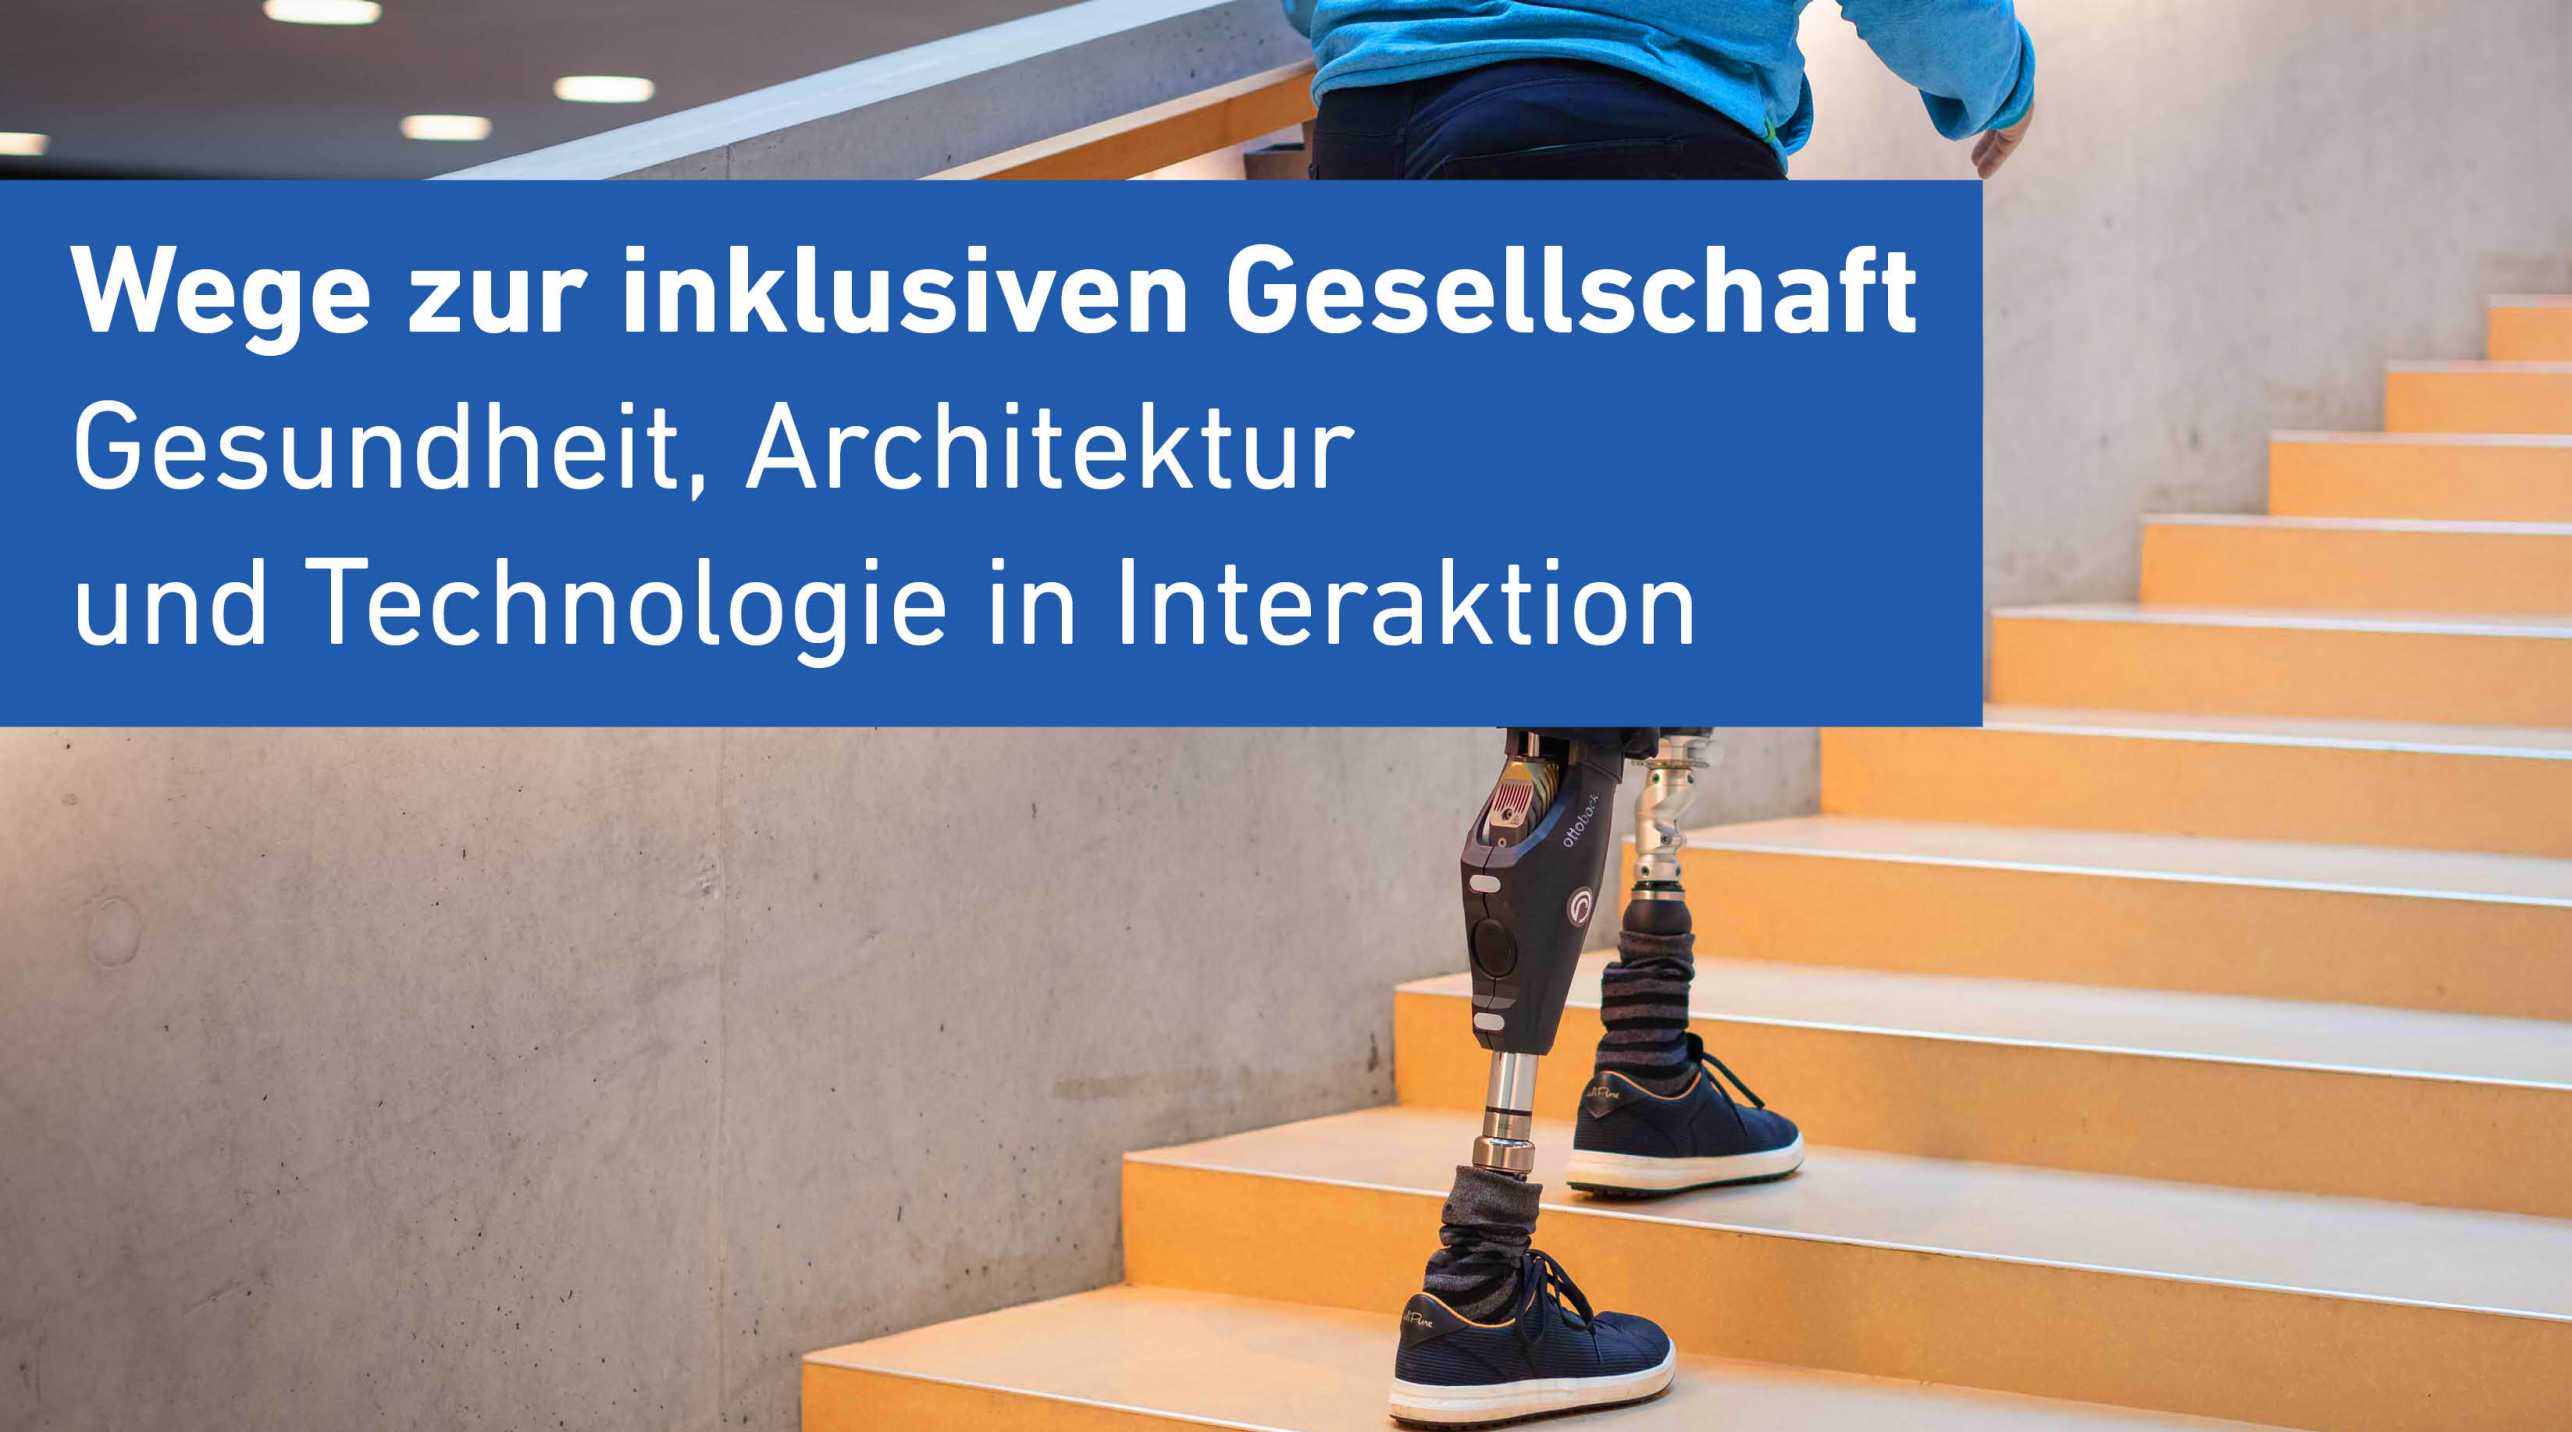 teaser for RESC Public Symposium 2023 titled “Wege zur inklusiven Gesellschaft – Gesundheit, Architektur und Technologie in Interaktion”